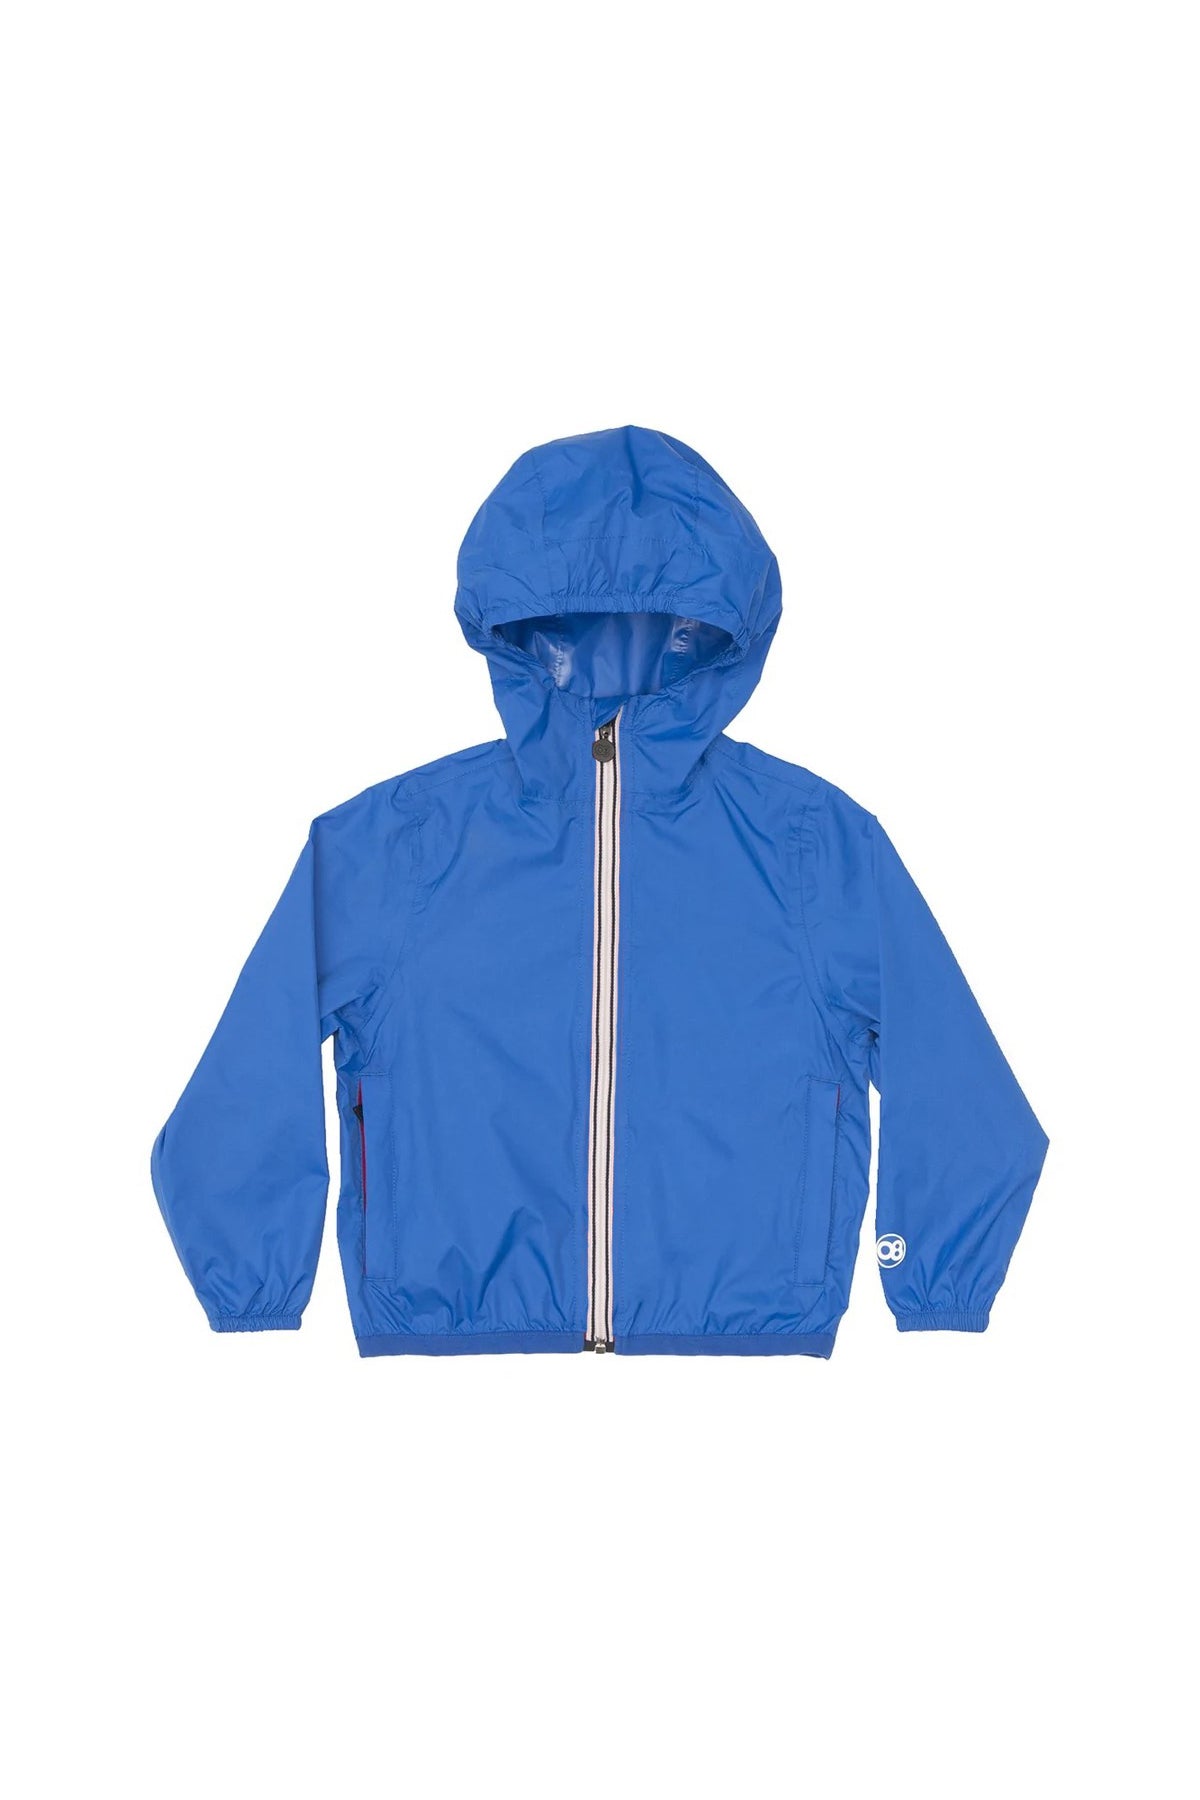 Veste de pluie et coupe-vent pliables à fermeture éclair intégrale bleu royal pour enfants